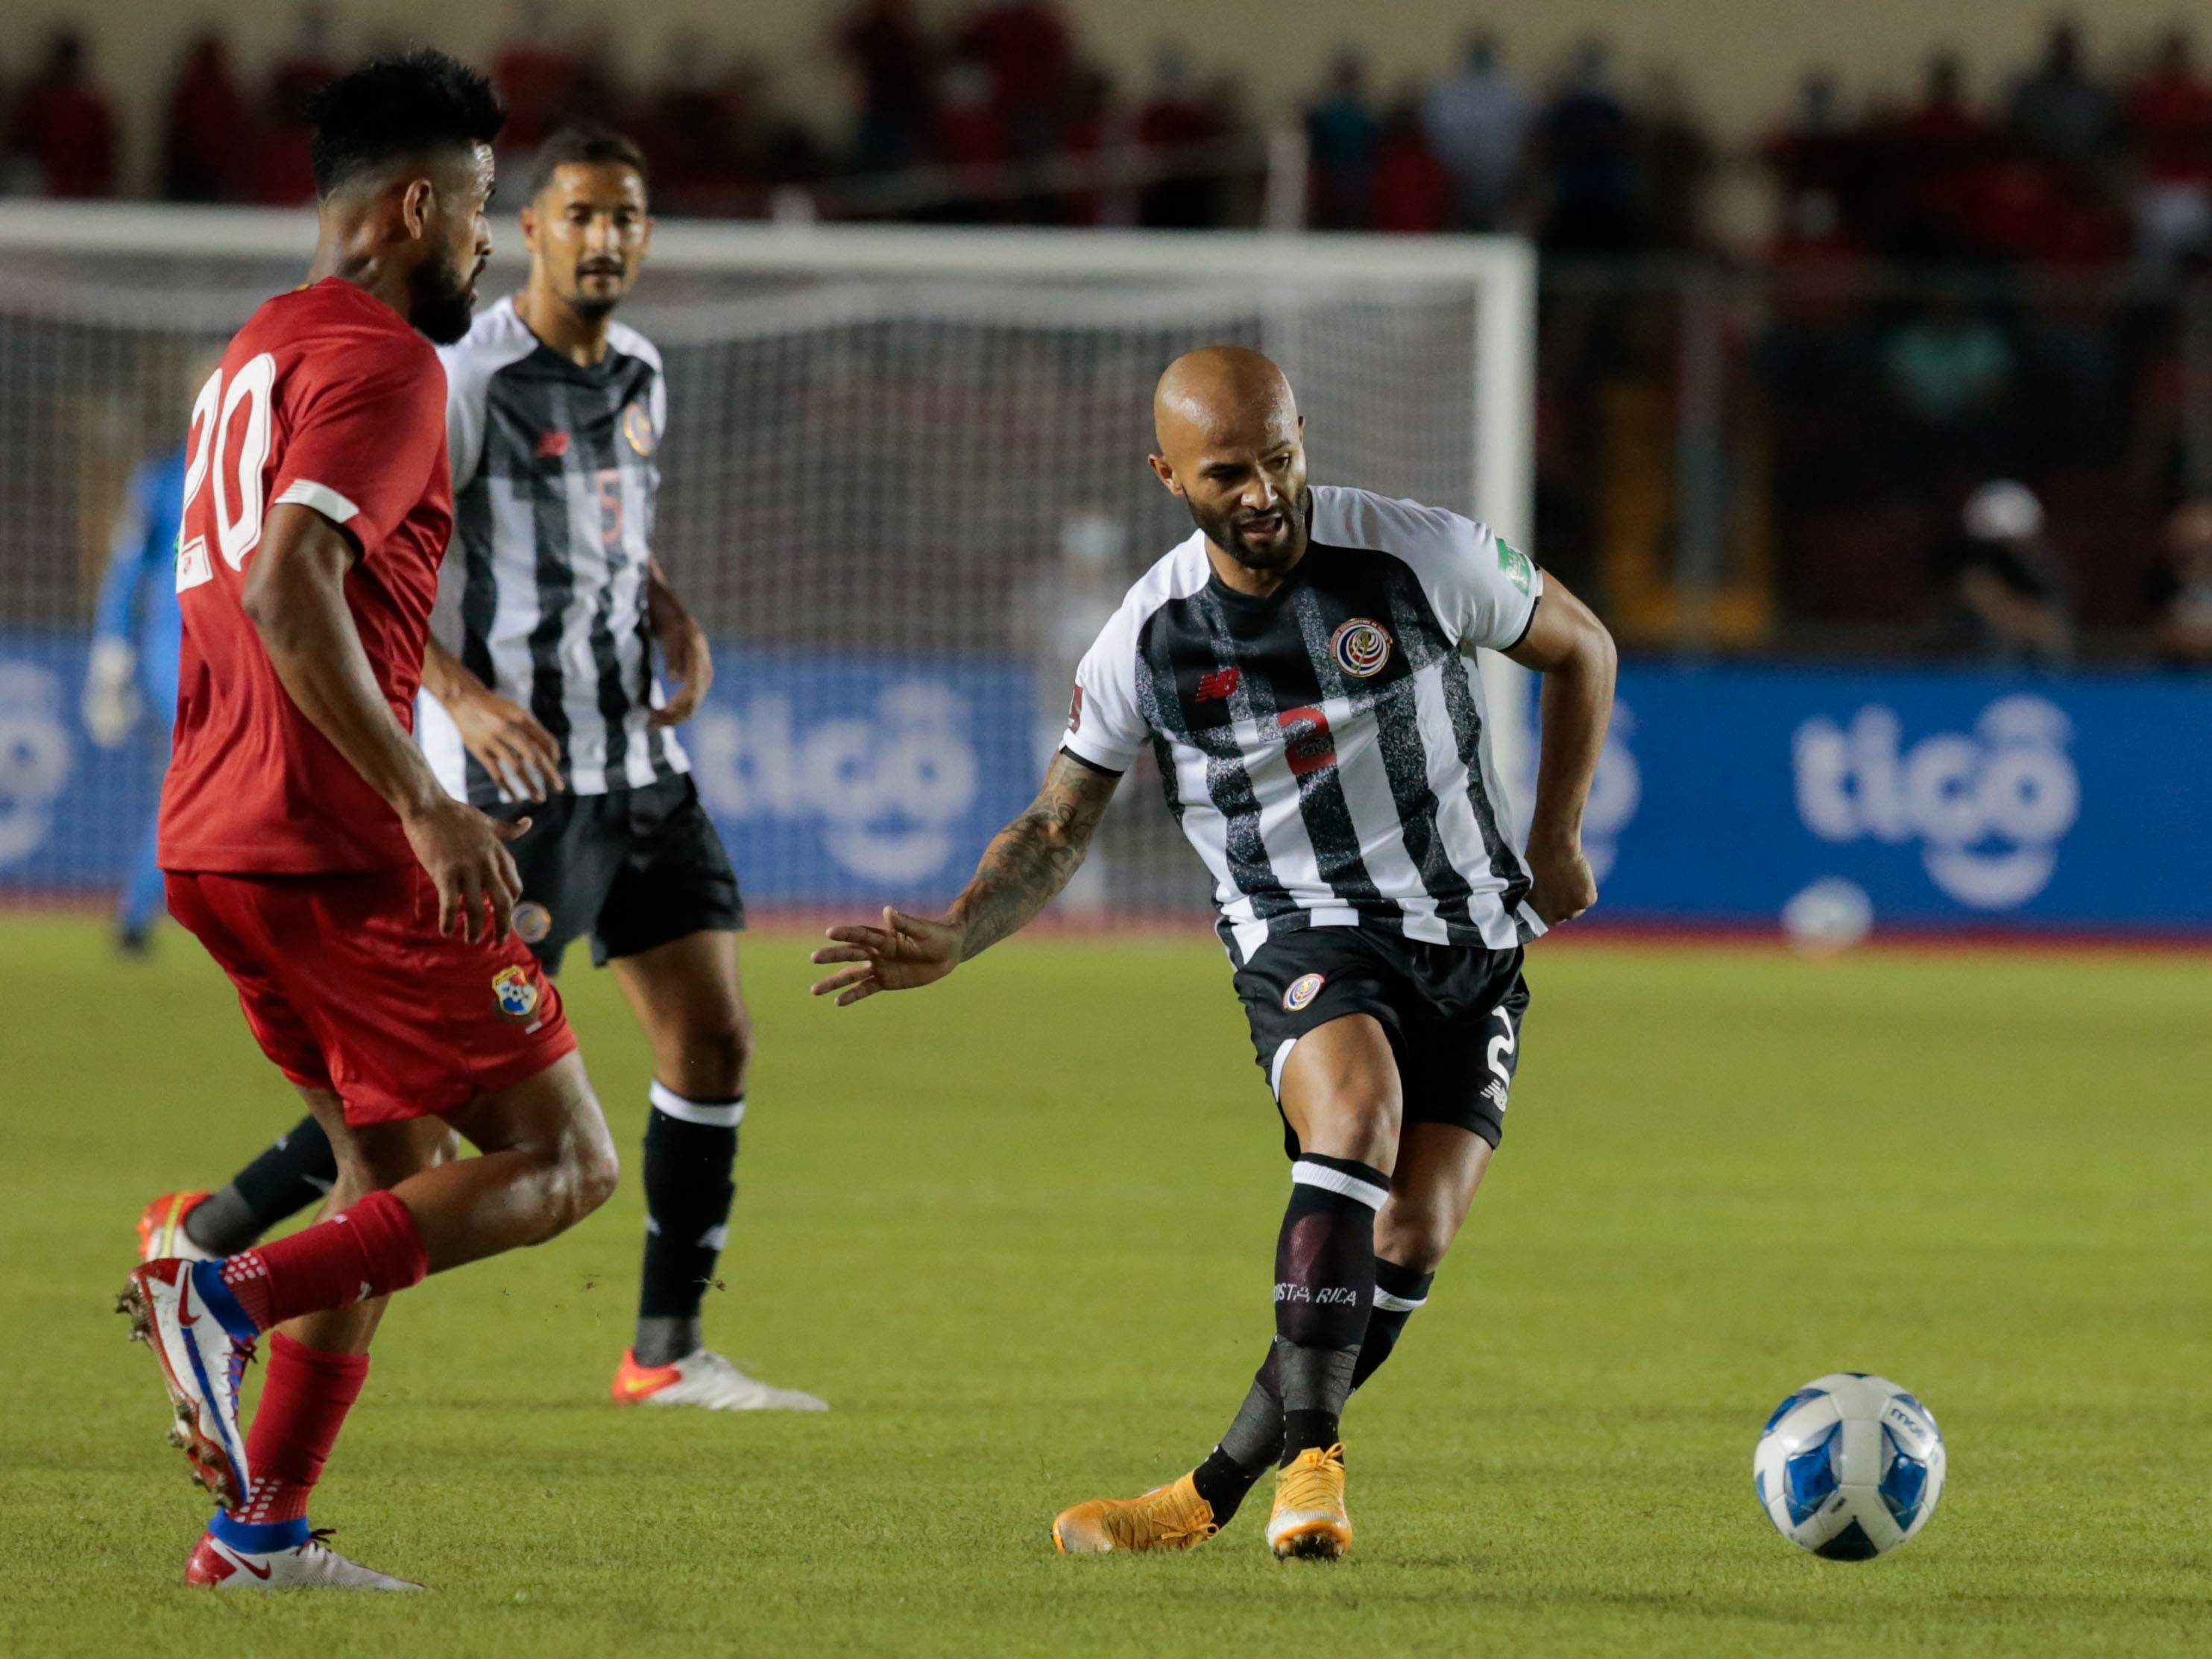 Primer tiempo: Con poco en ofensiva y bien en defensa la Sele empata 0 a 0 en Panamá